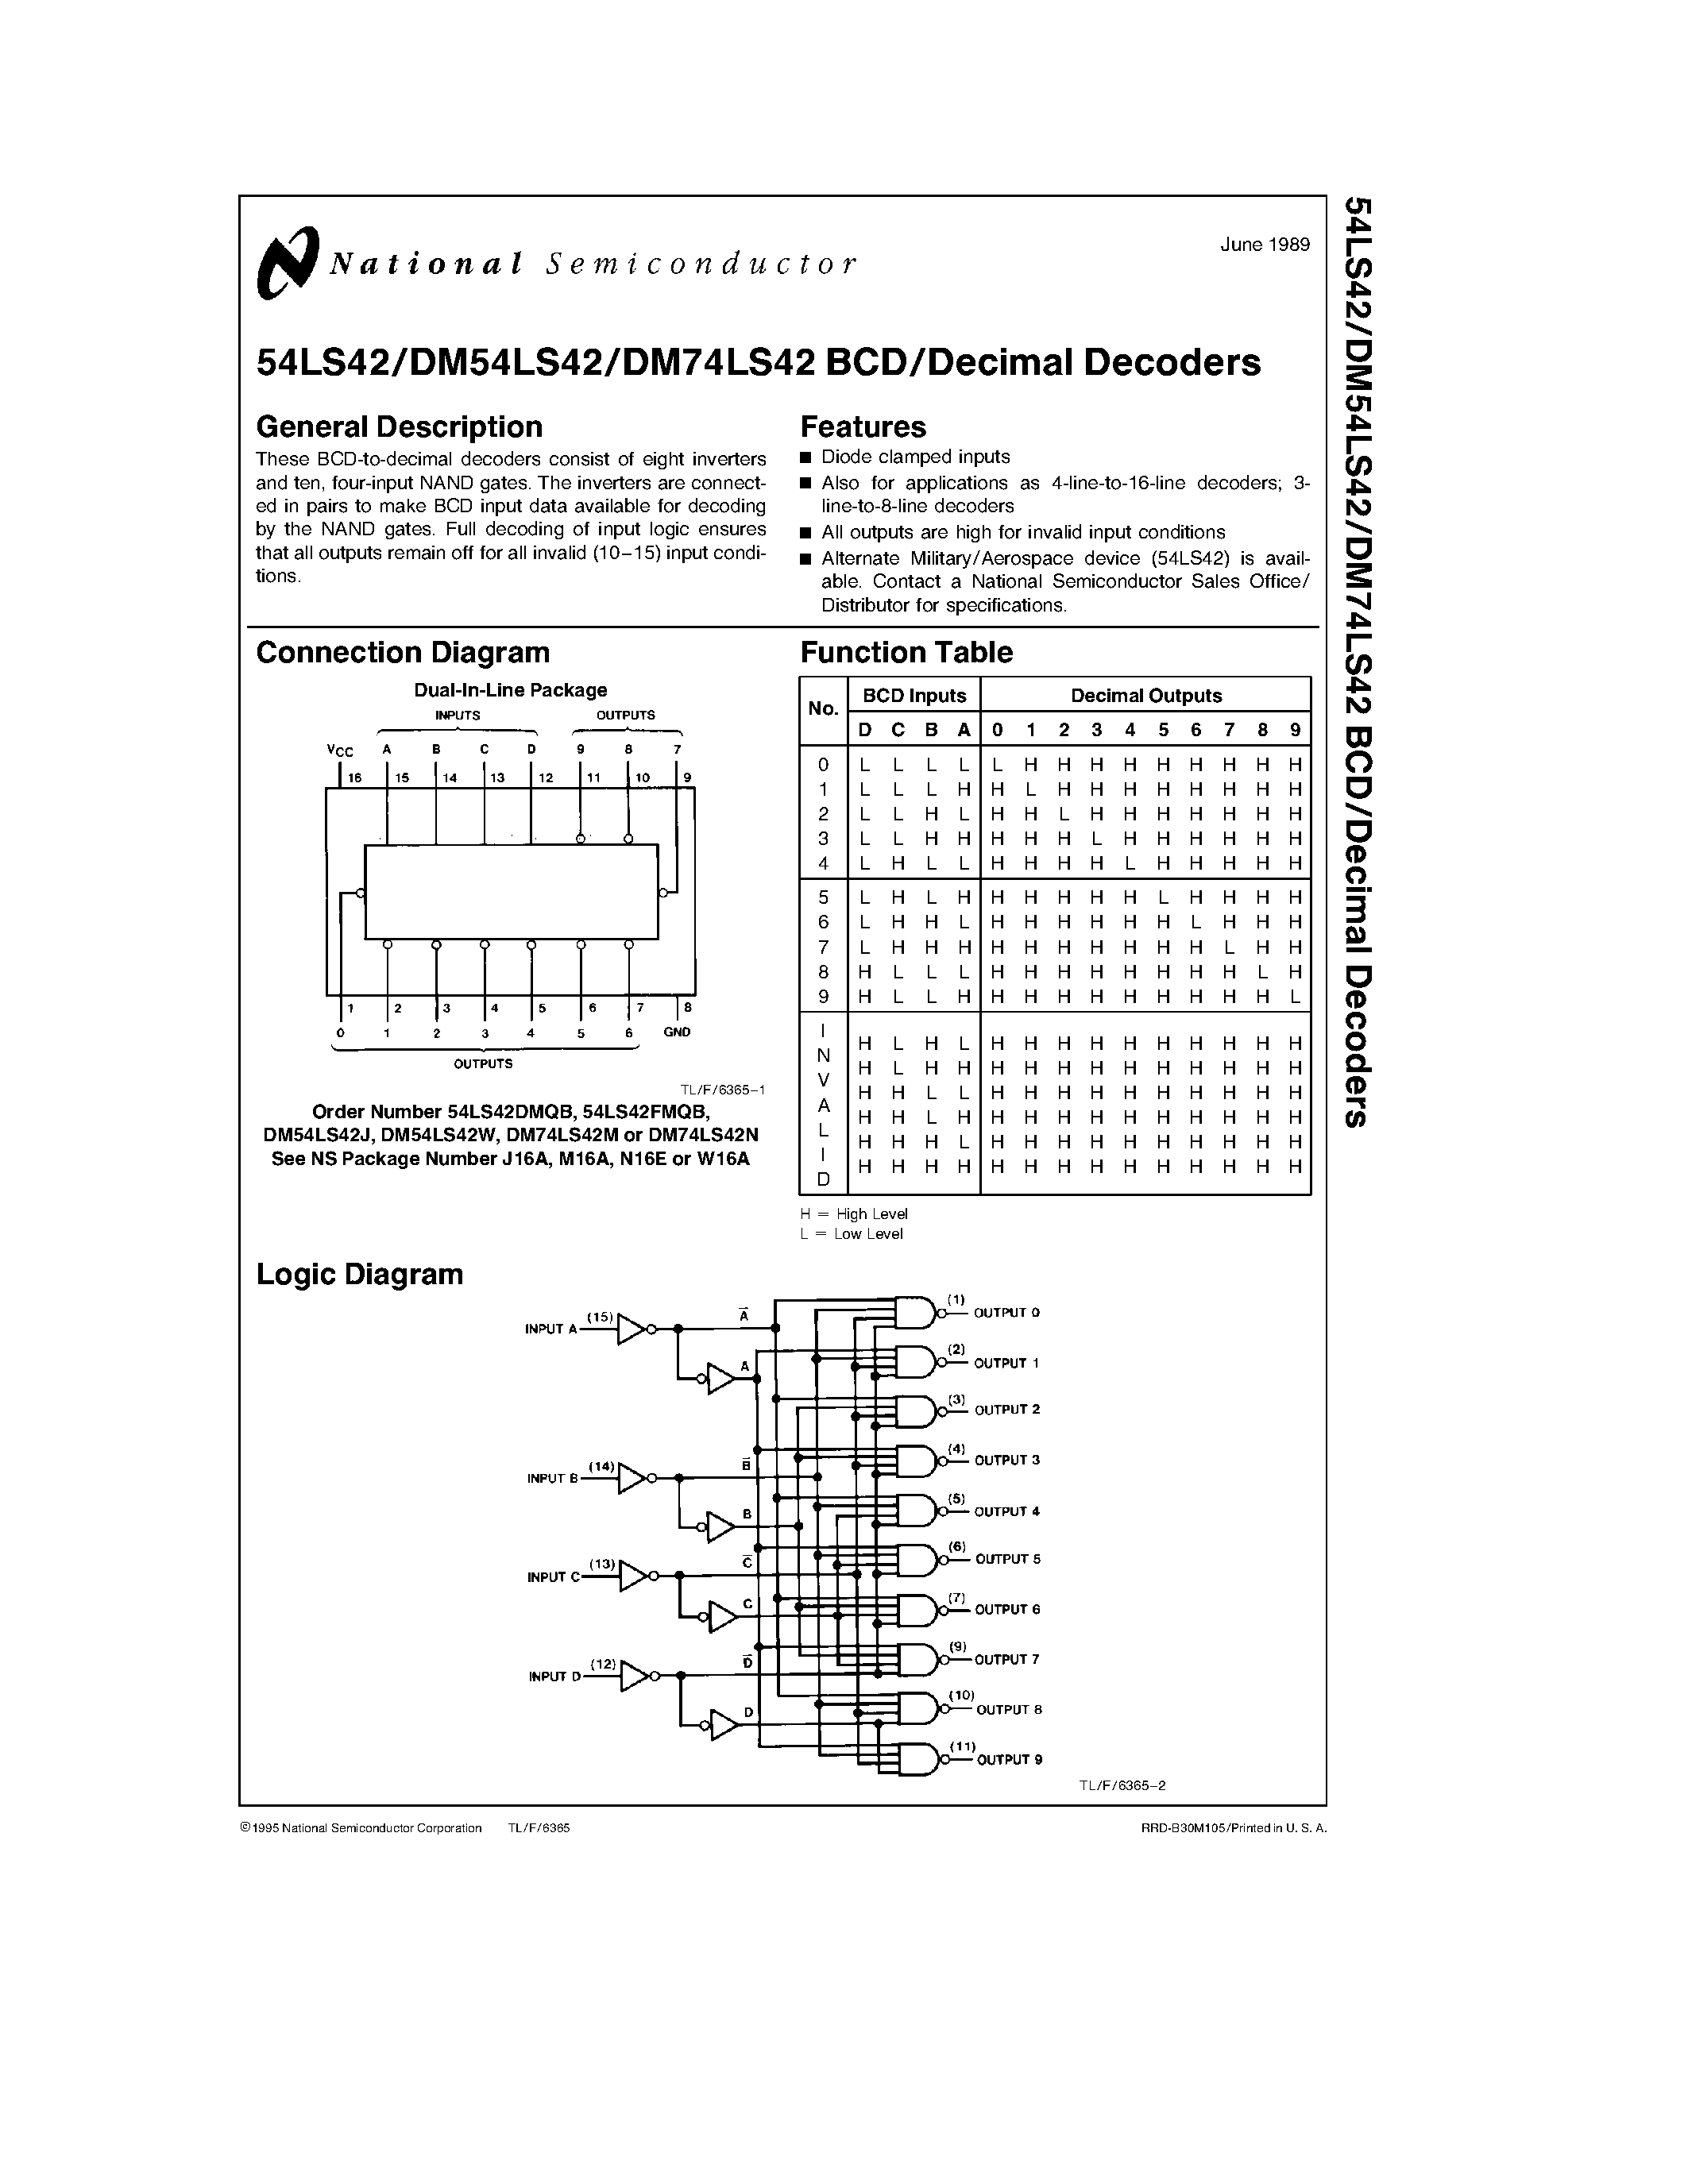 Даташит DM74LS42 - Decimal Decoders страница 1